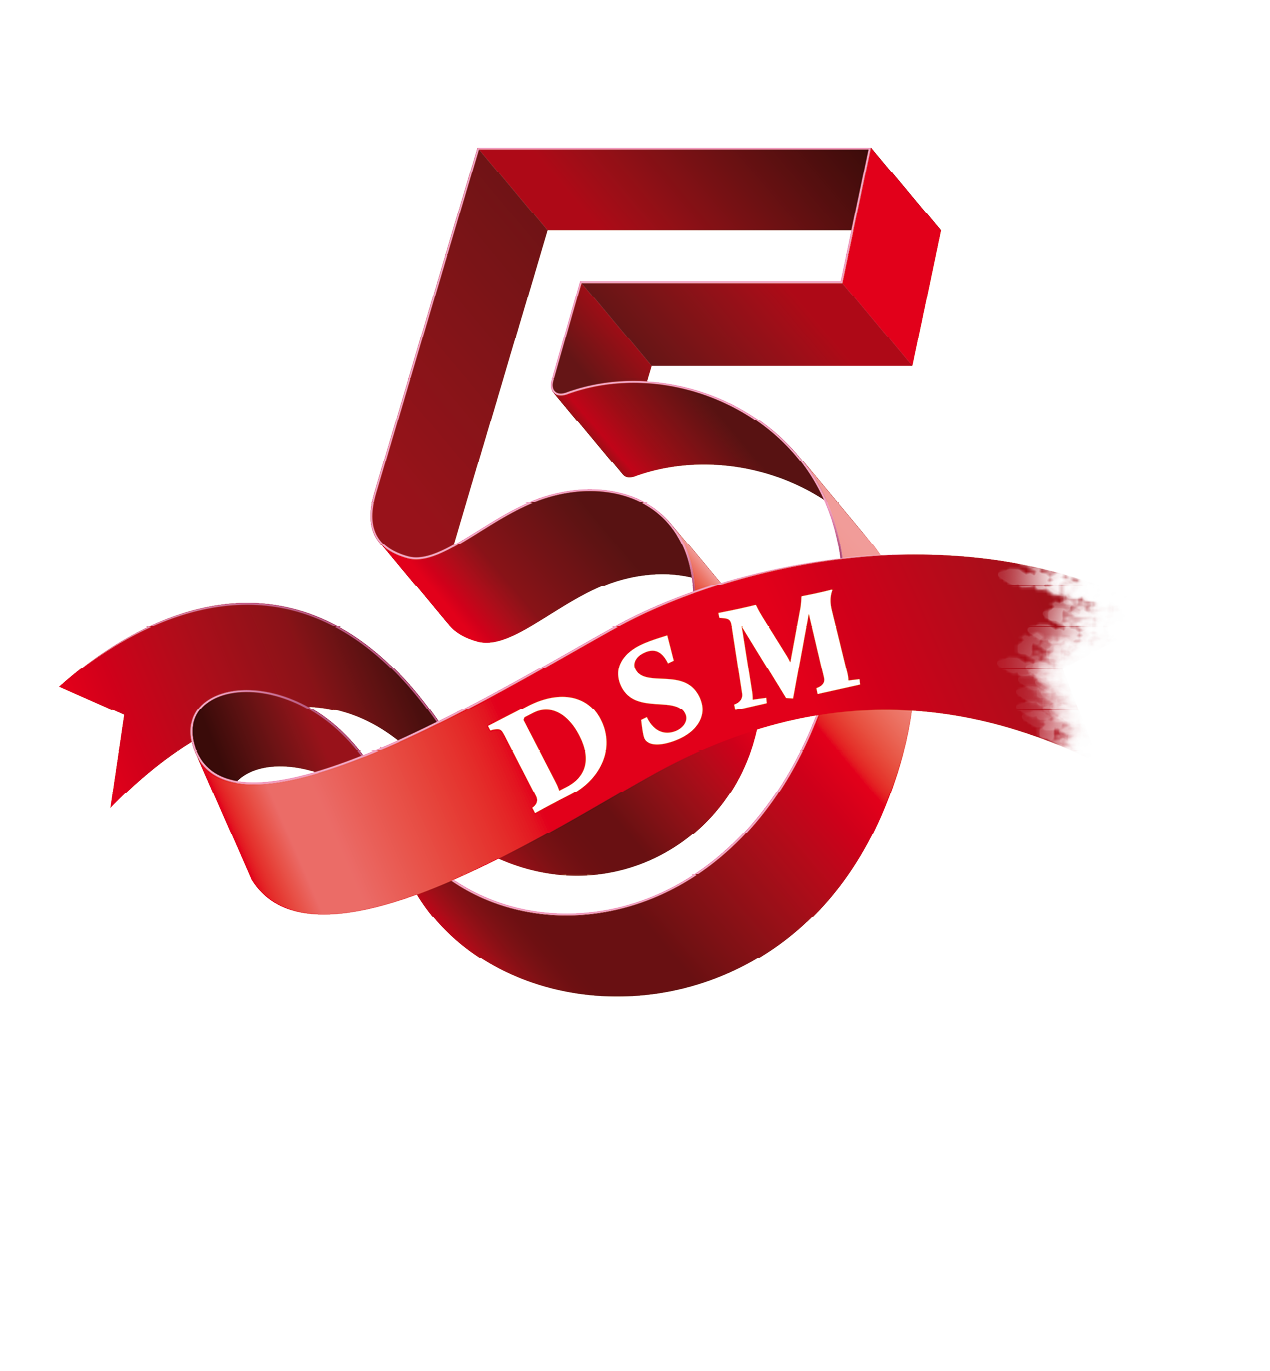 Hij is er: de DSM-5